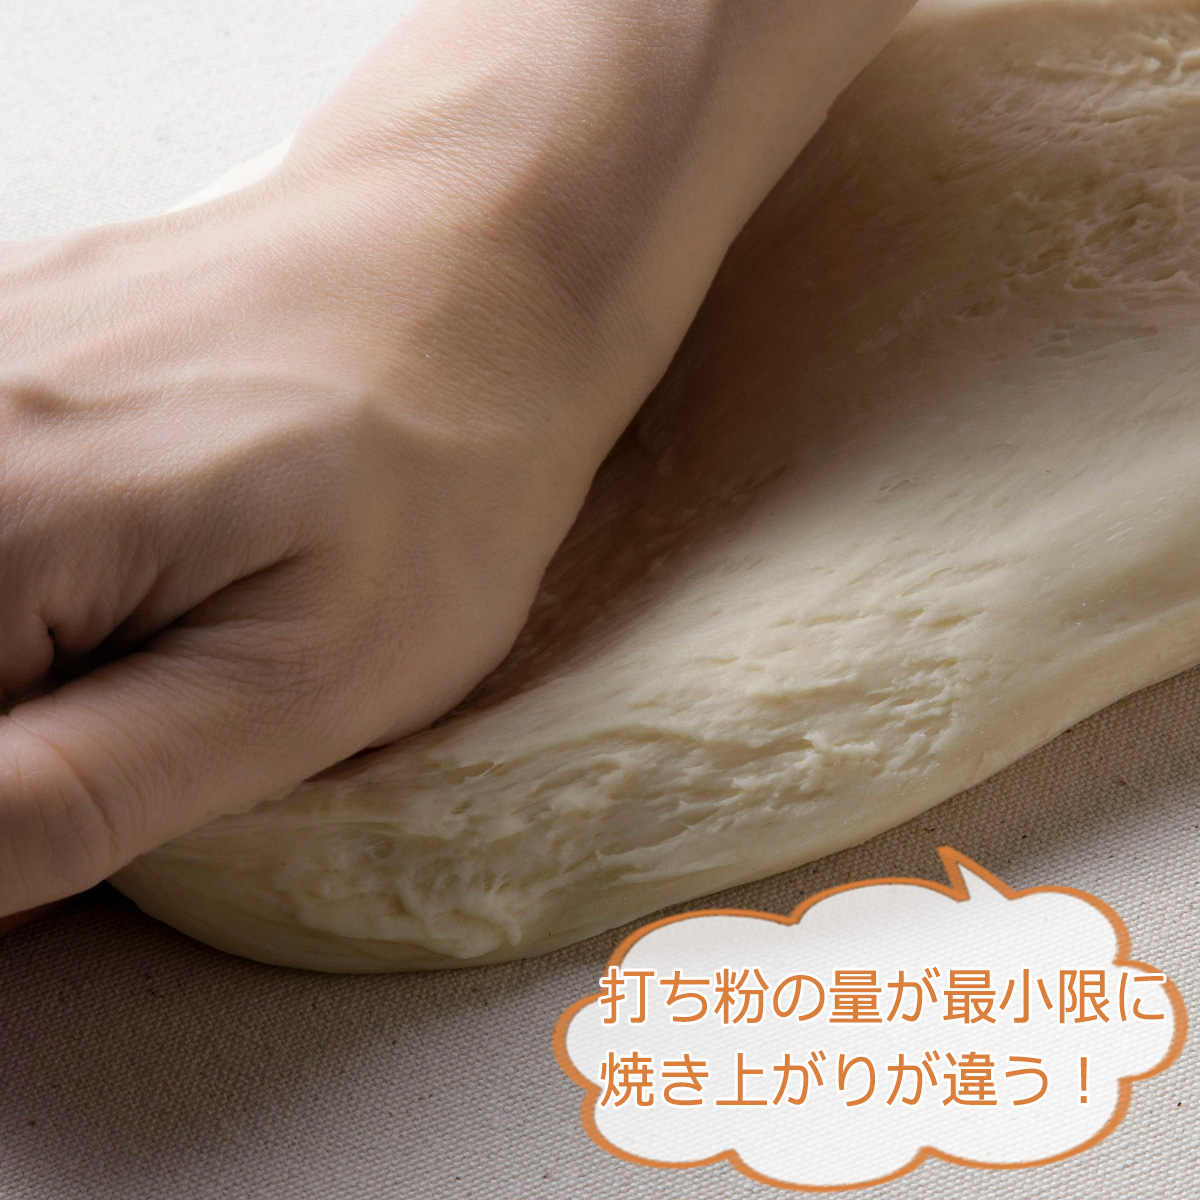 パン の キャンバス地 45×60cmパン作り ホームメイド 手作りパン二次発酵 発酵 焼き立てパン マットシート こねる こねマット下村企販 燕三条  ツバメ 日本製 | エルルショップ